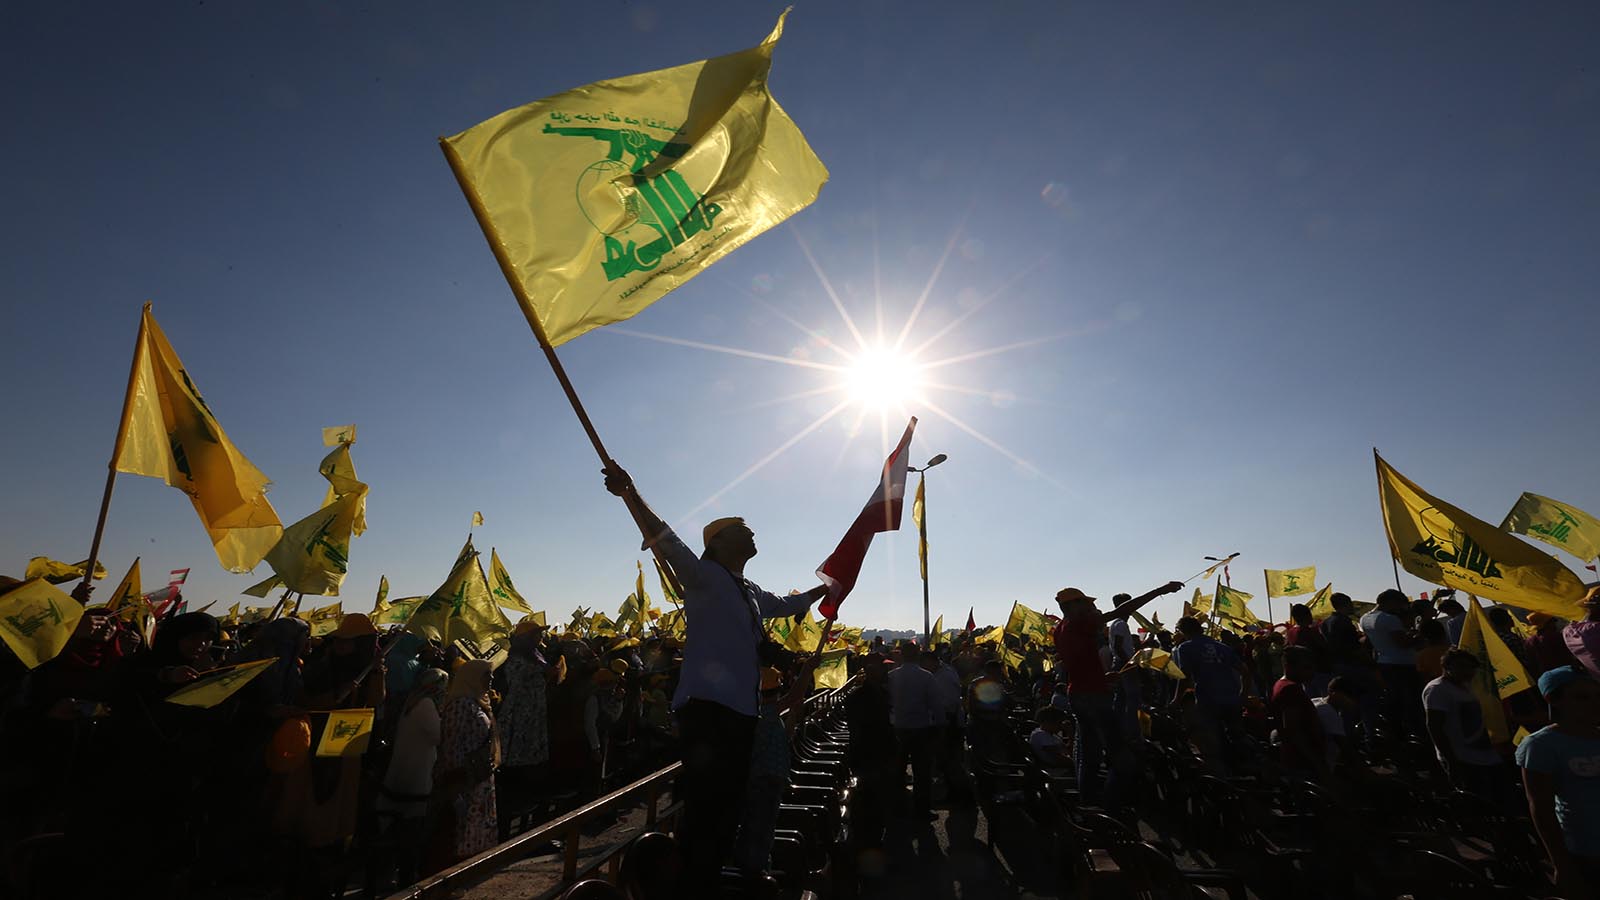 تحقيقات أميركية: هذه شبكة حزب الله لتجارة السيارات